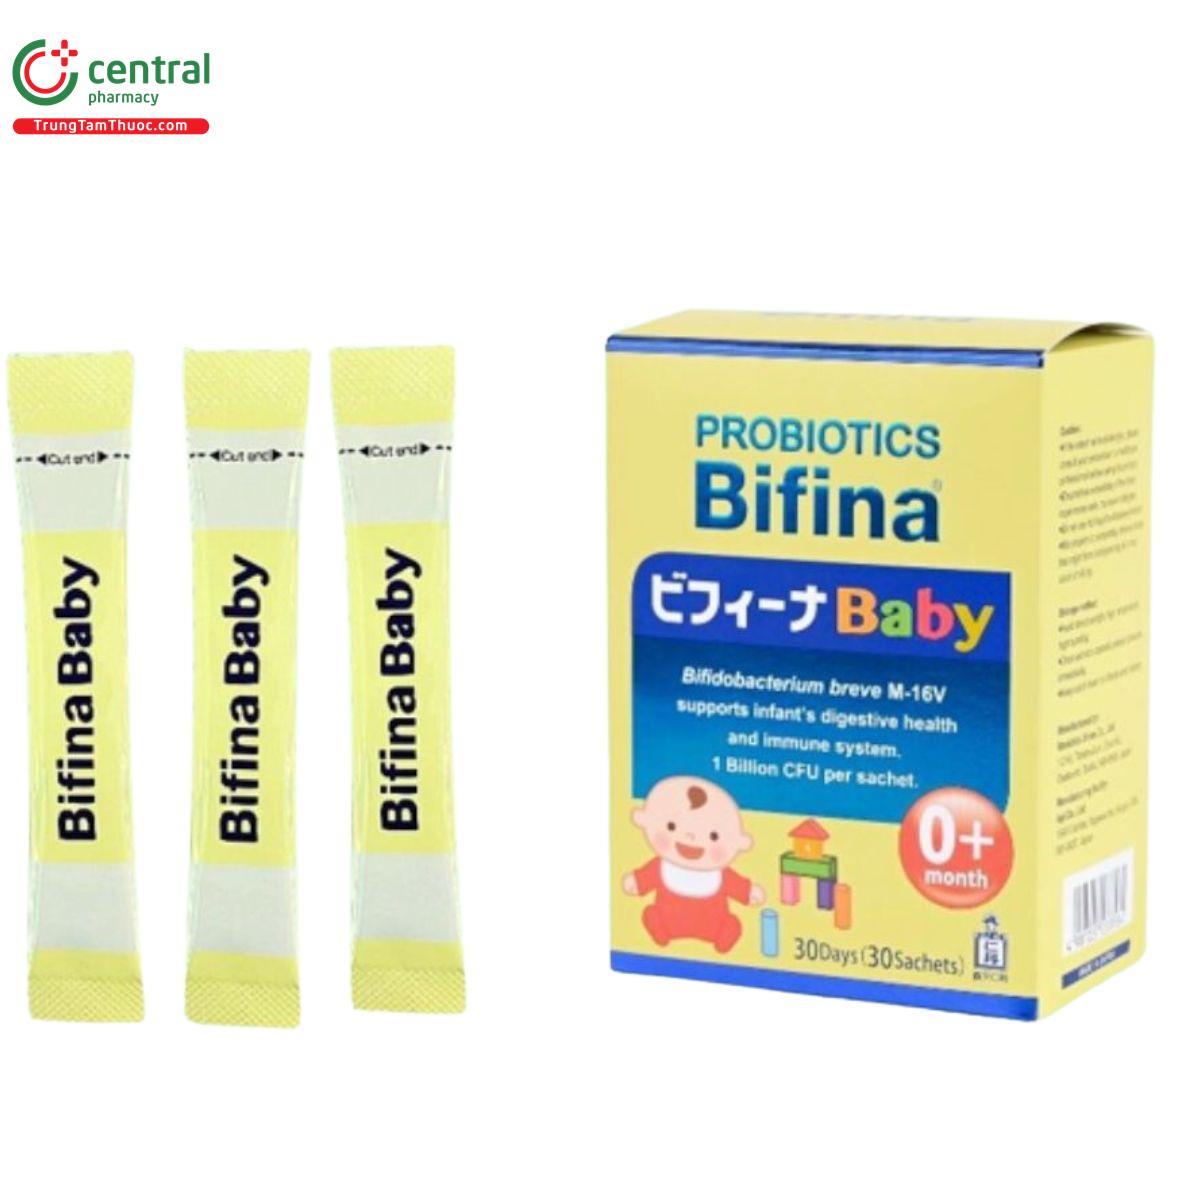 bifina baby 12 F2802